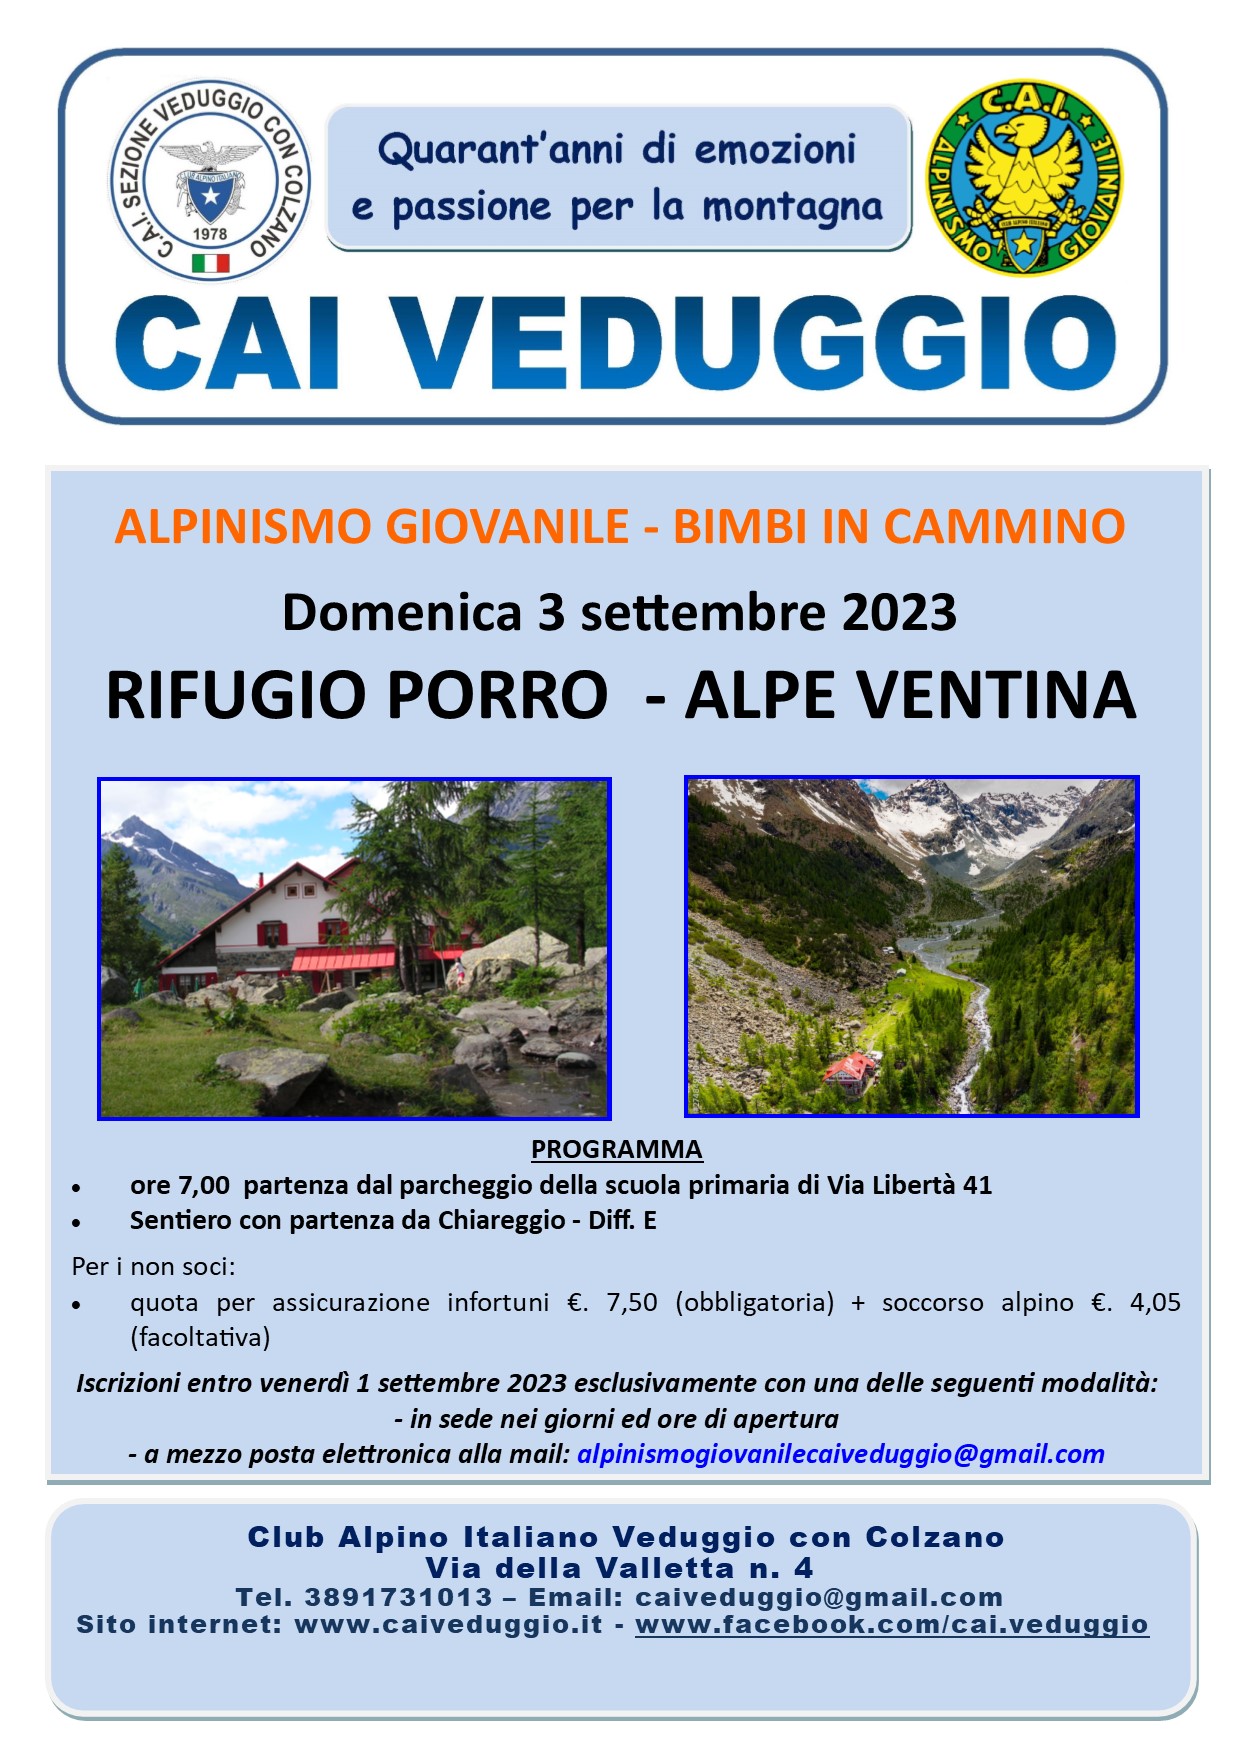 Domenica 3 settembre 2023 – Rifugio Porro/Alpe Ventina (Alpinismo Giovanile – Bimbi in cammino)